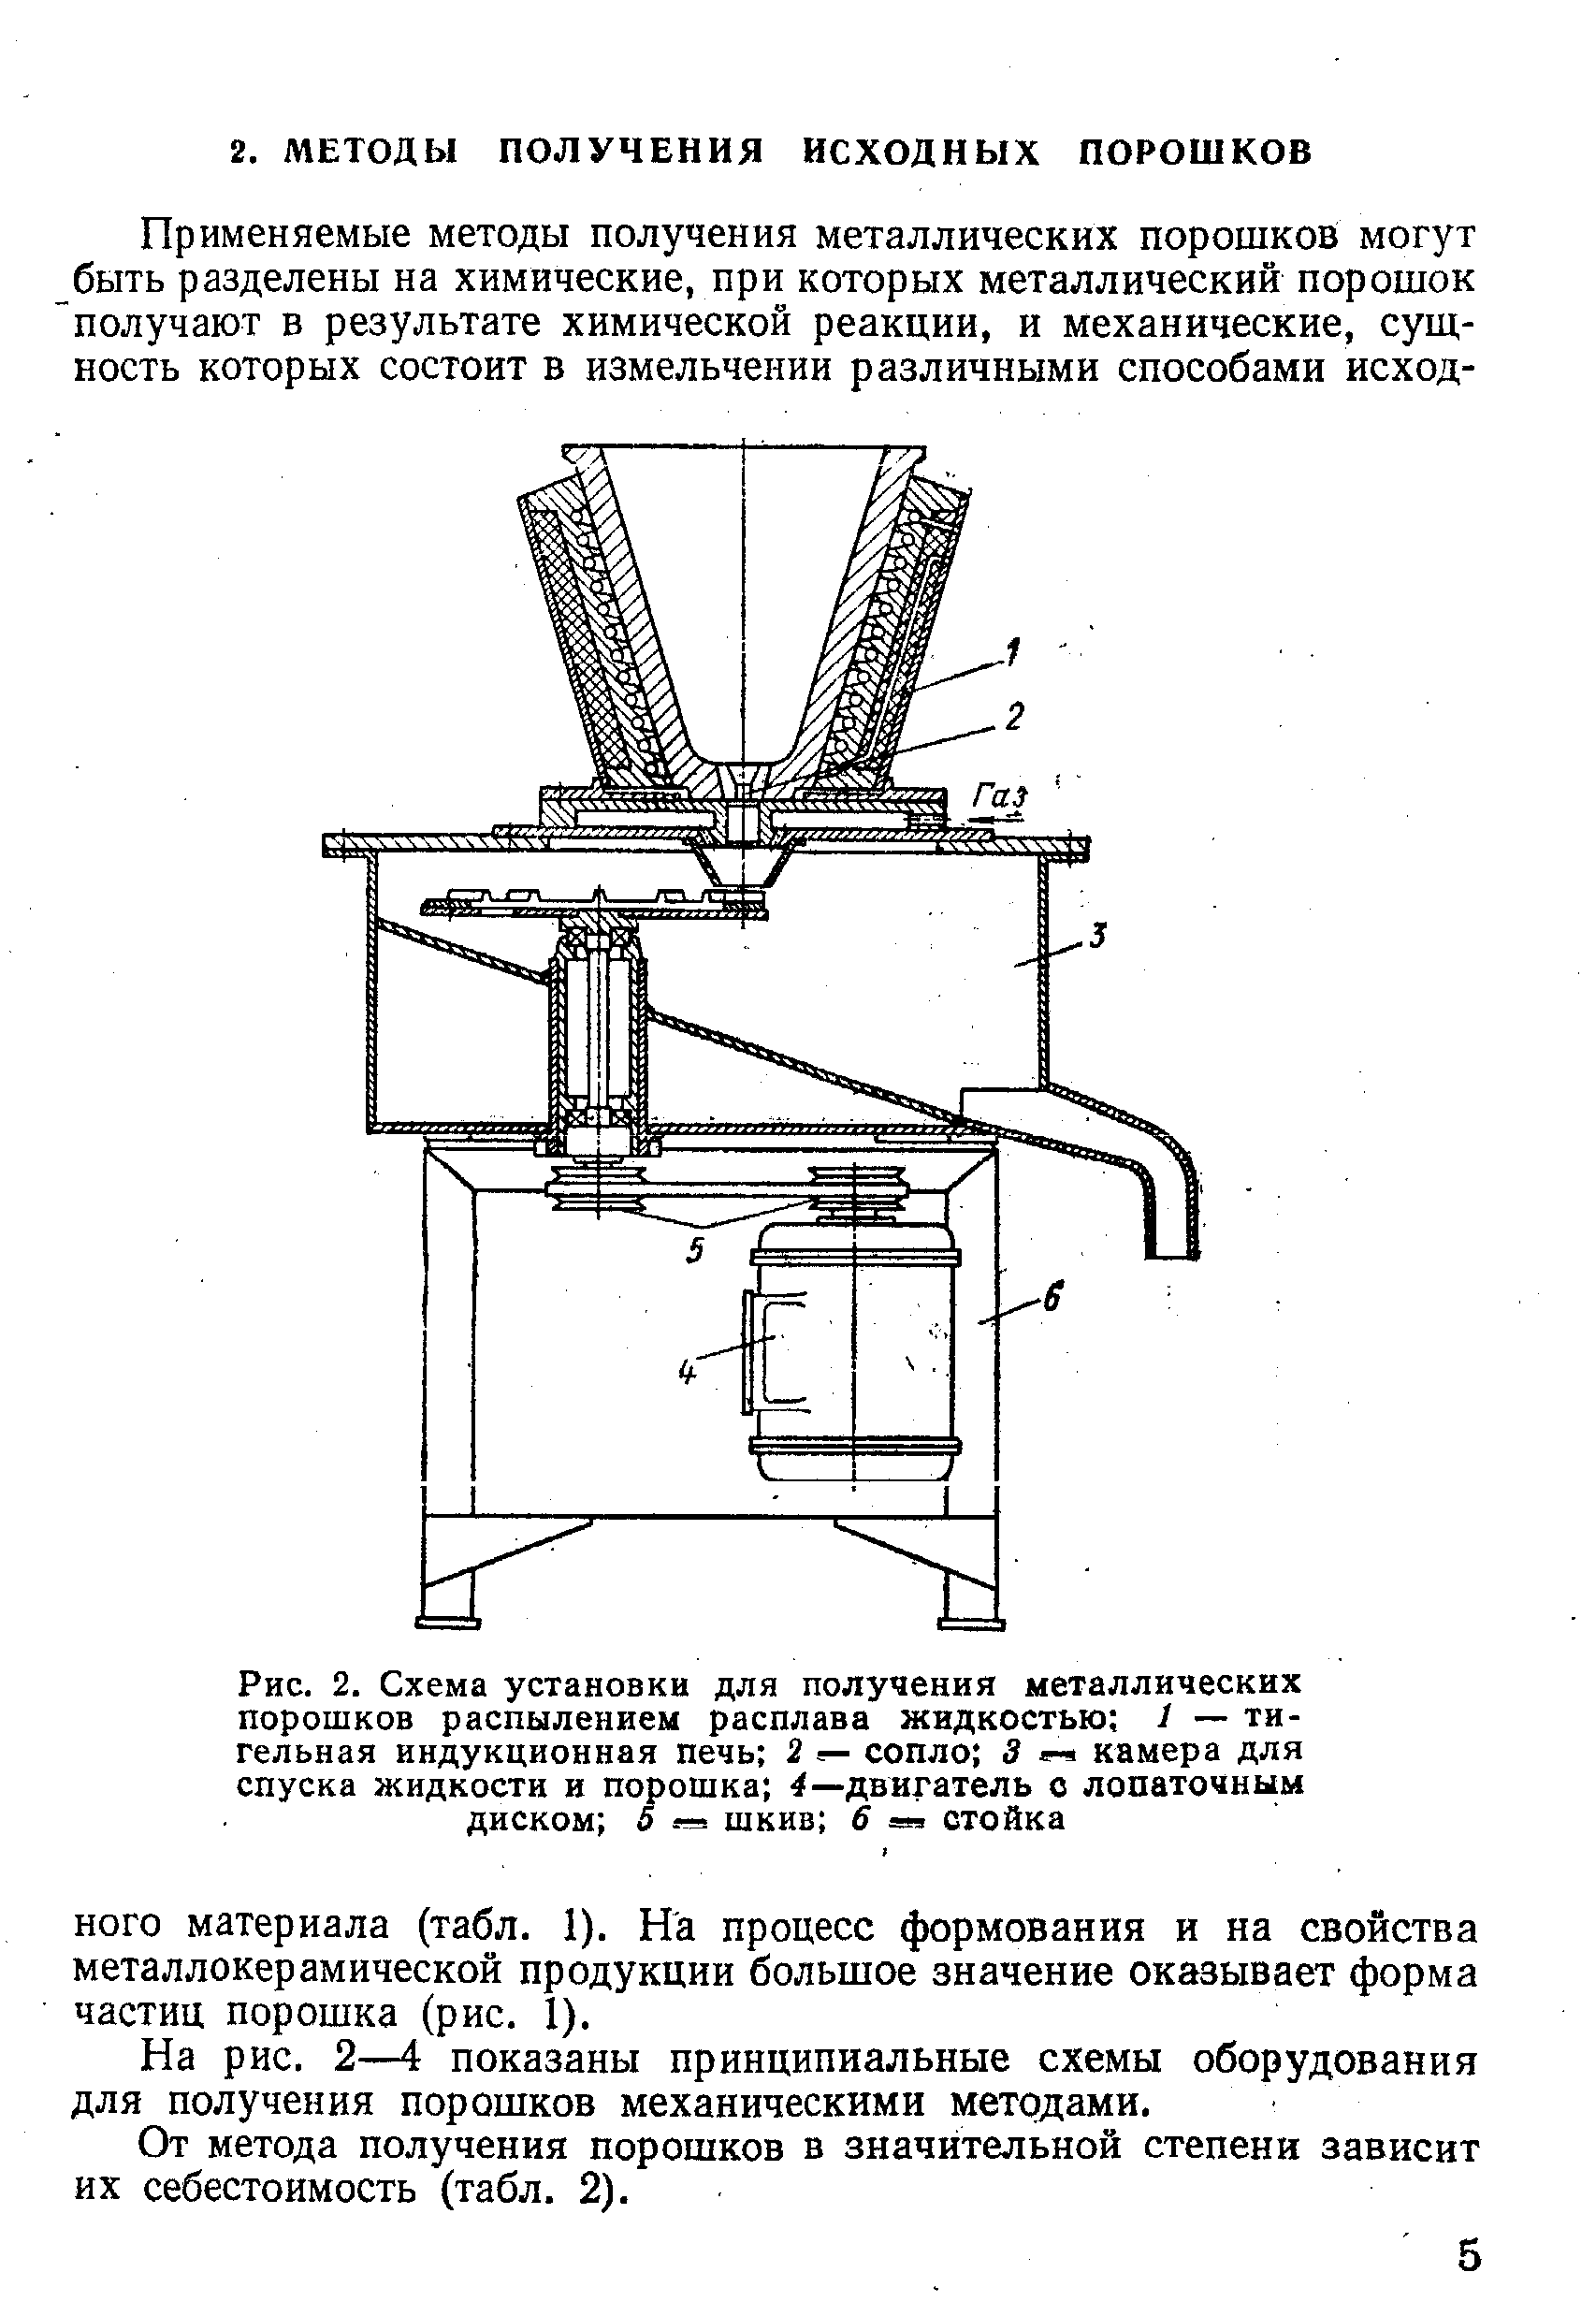 На рис. 2—4 показаны принципиальные схемы оборудования для получения порошков механическими методами.
